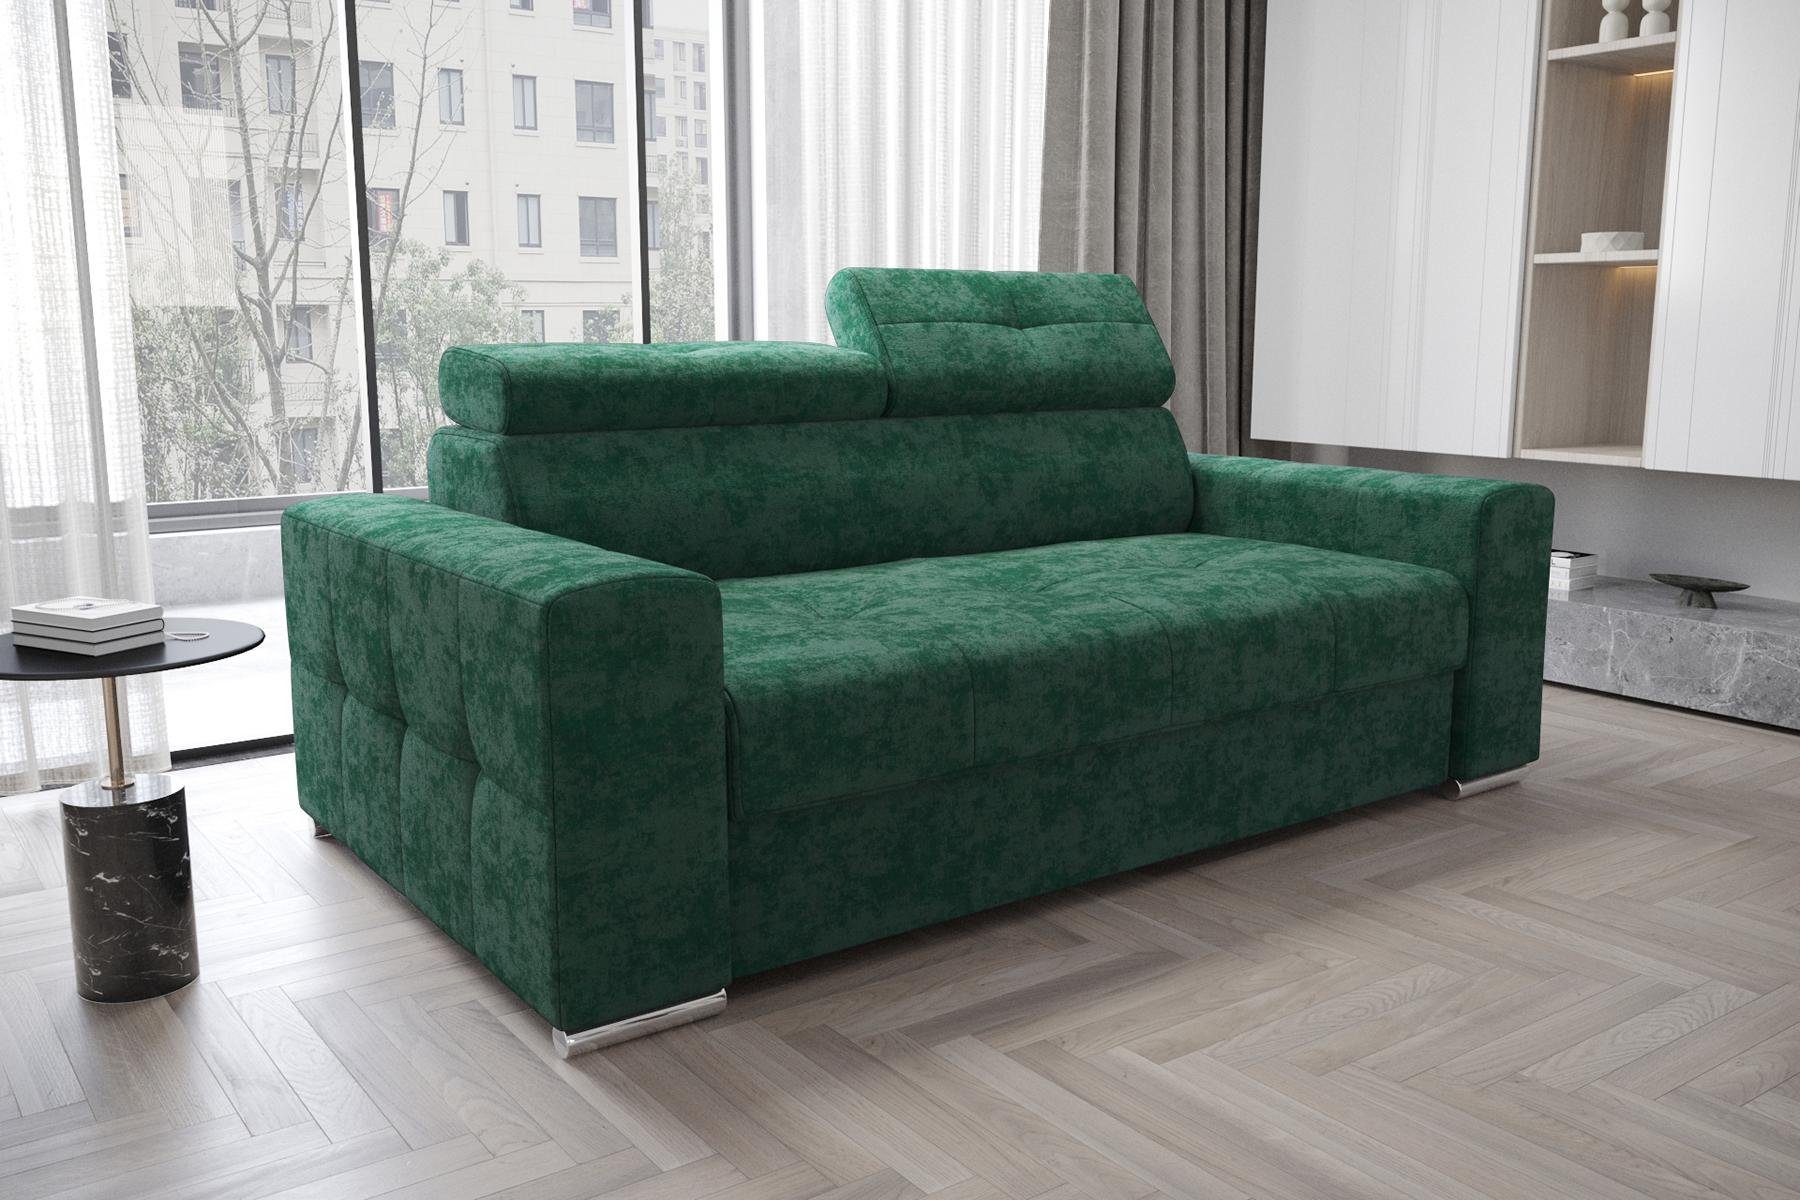 JVmoebel Sofa Designer Zweisitzer Couch Polster Textil Leder Sofa Design 2 Sitzer, Made in Europe Grün | Grün | Grün